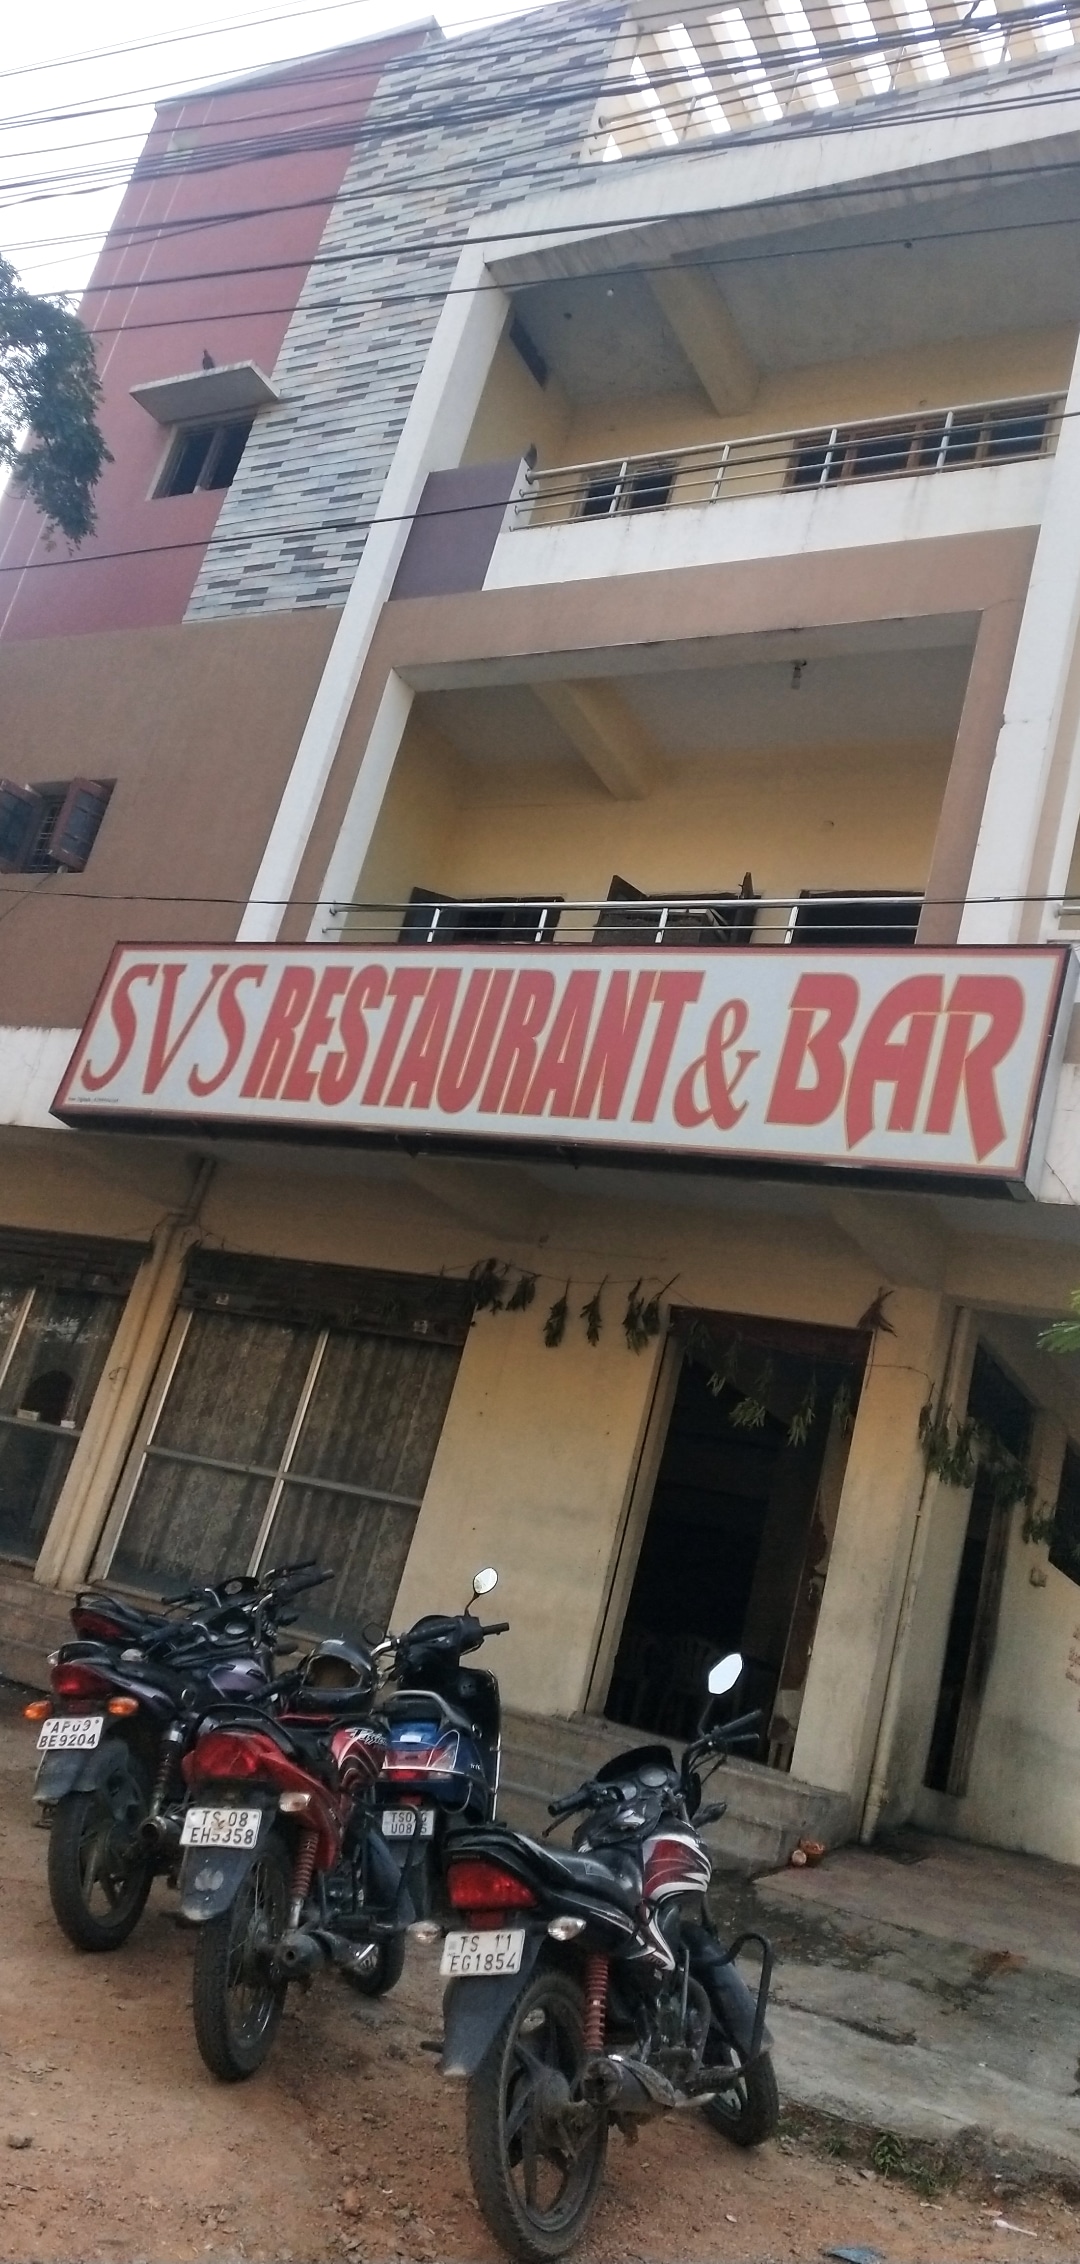 S.V.S Bar & Restaurant